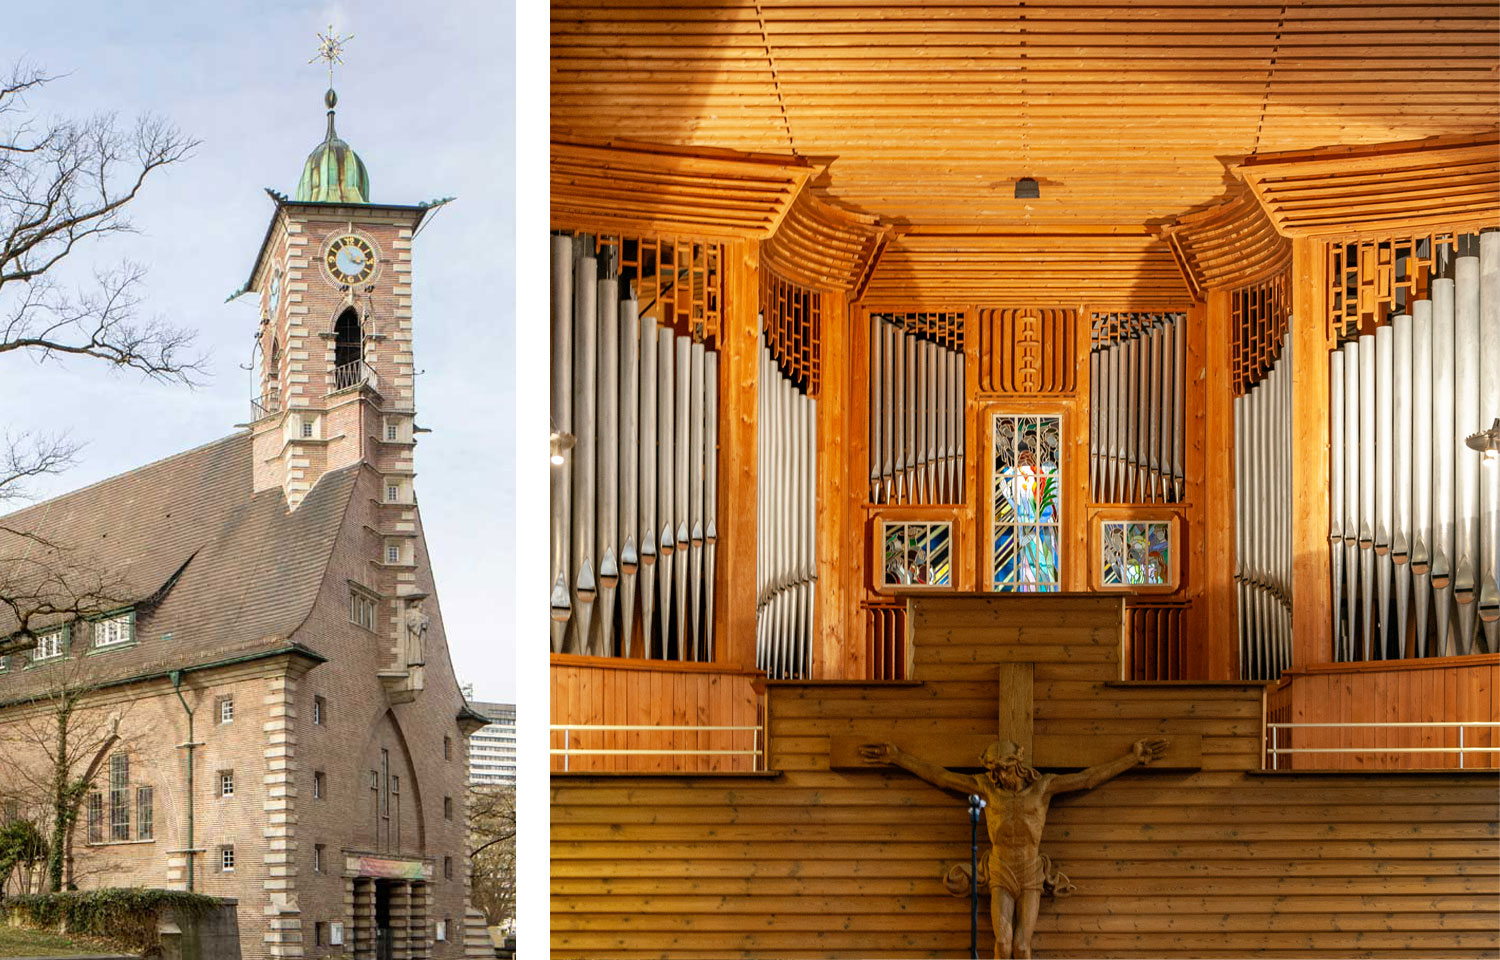 Außenansicht der Martin-Luther-Kirche mit Kirchturm, danaben eine Innenaufnahme der Orgel